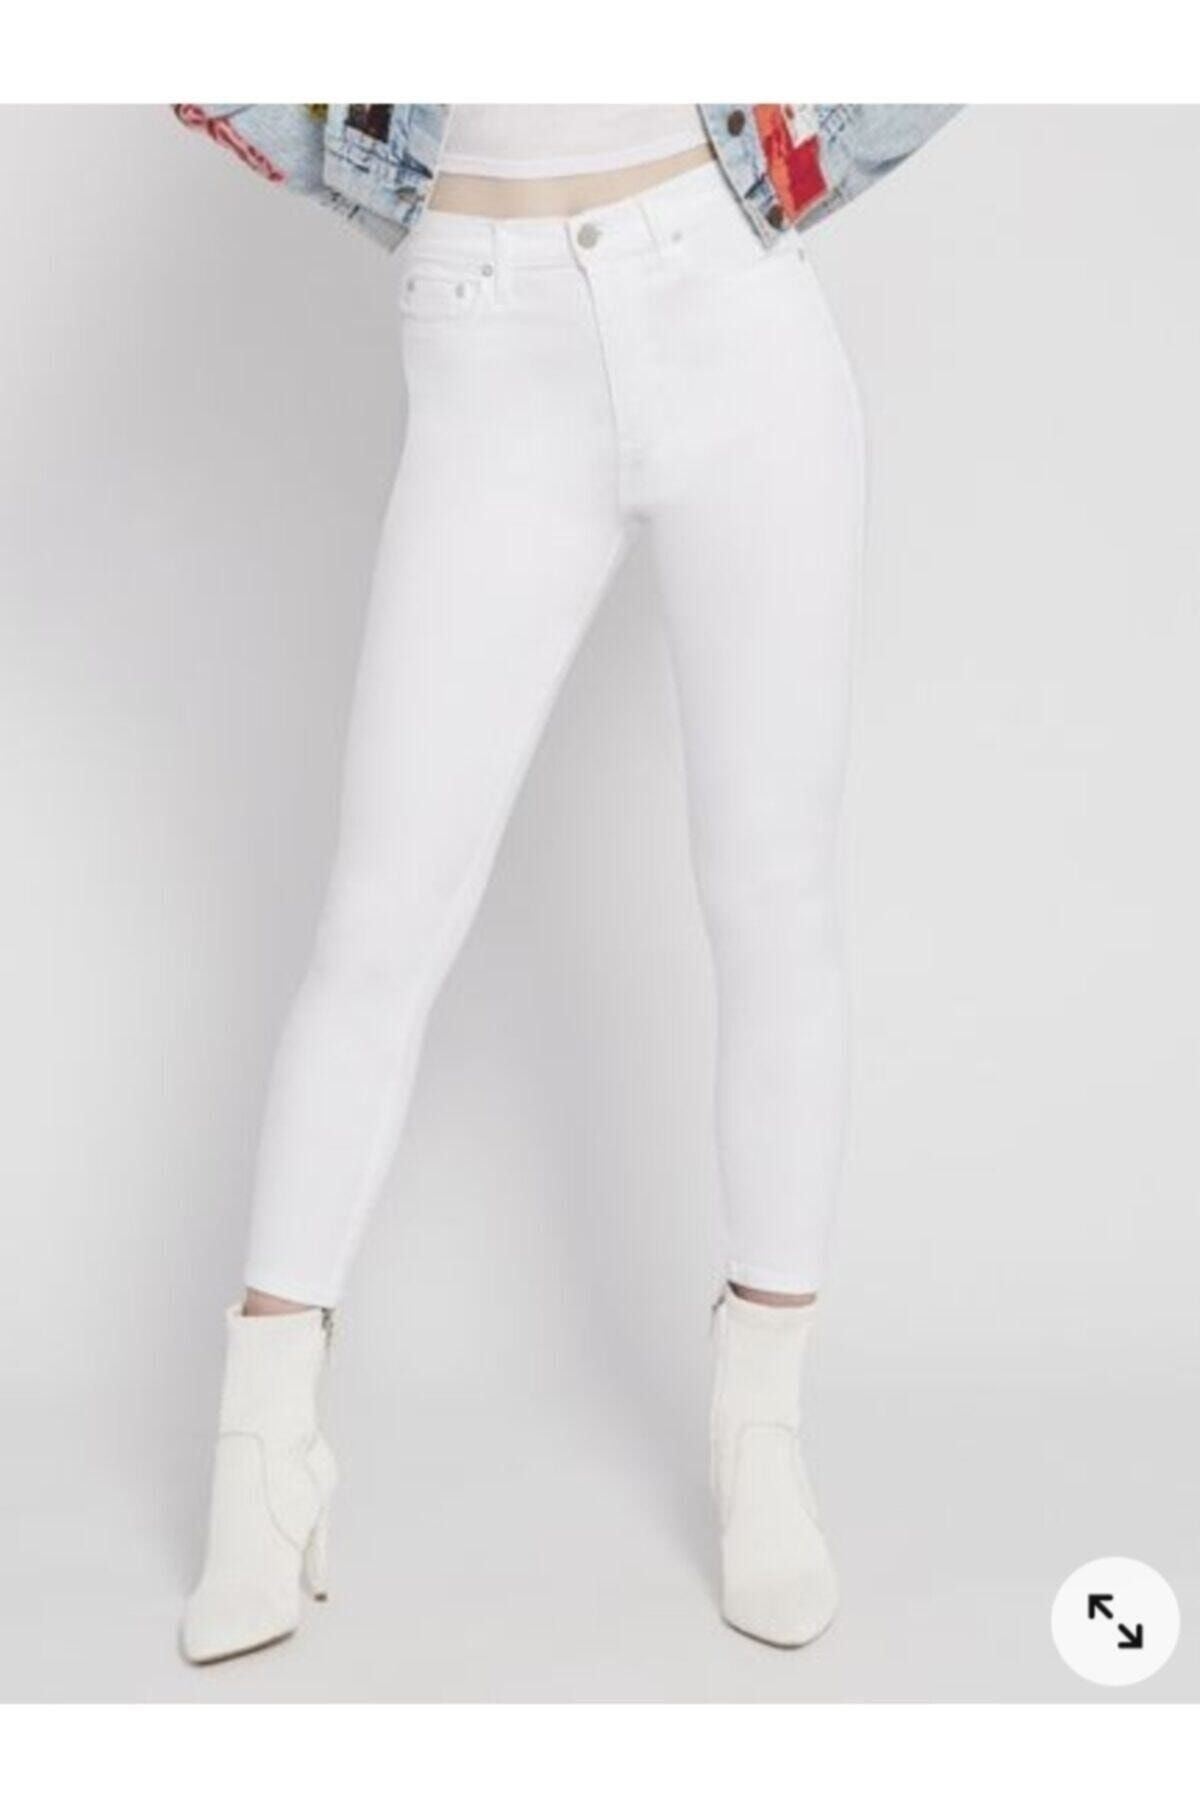 Maystore B.e.y.a.z Skinny Jeans Beyaz Kot Uzun Bacak S.ü.p.e.r Slim